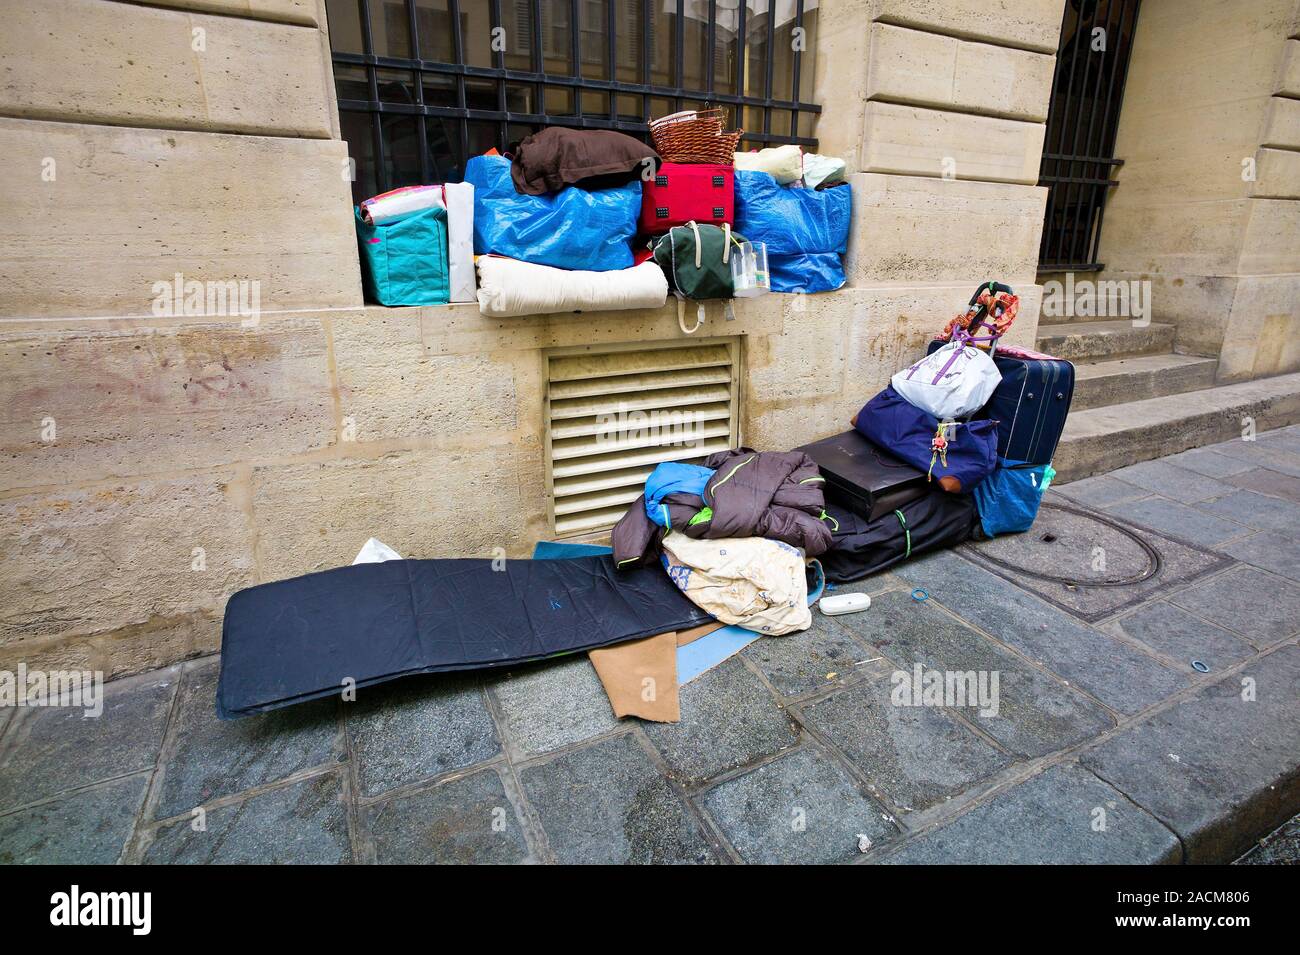 París, Francia. persona sin hogar el lugar para dormir Foto de stock